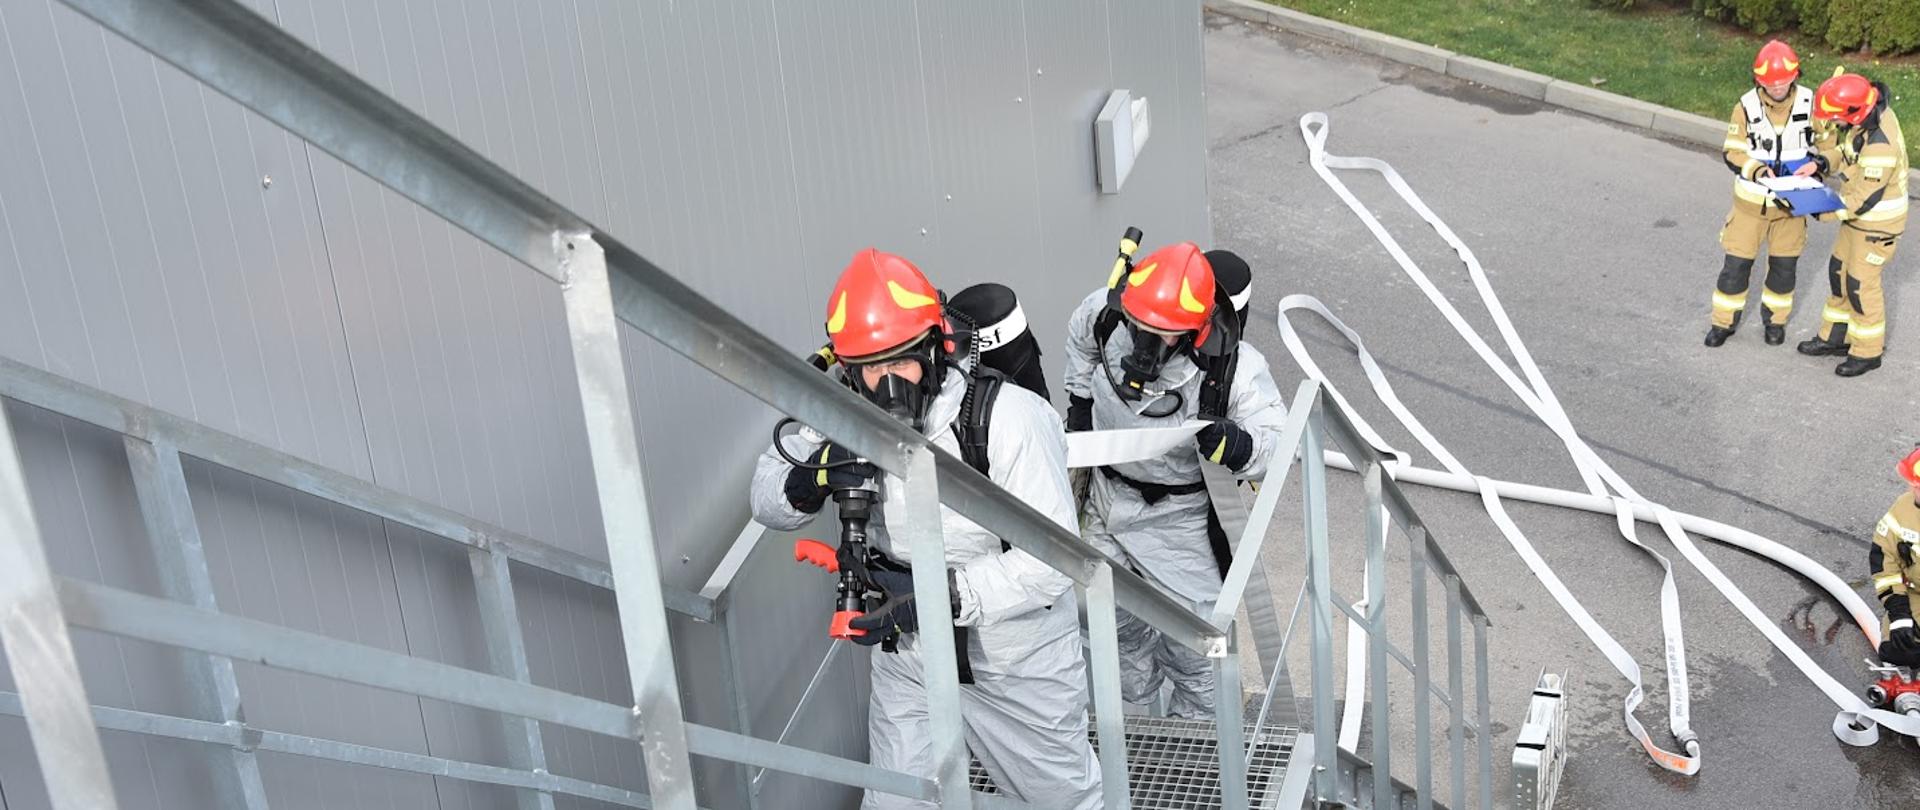 Zdjęcie przedstawia dwóch strażaków ubranych w ubrania przeciwochlapaniowe i sprzęt ochrony układu oddechowego, którzy wchodzą po zewnętrznej klatce schodowej z linią gaśniczą. W tle pracują inni strażacy.